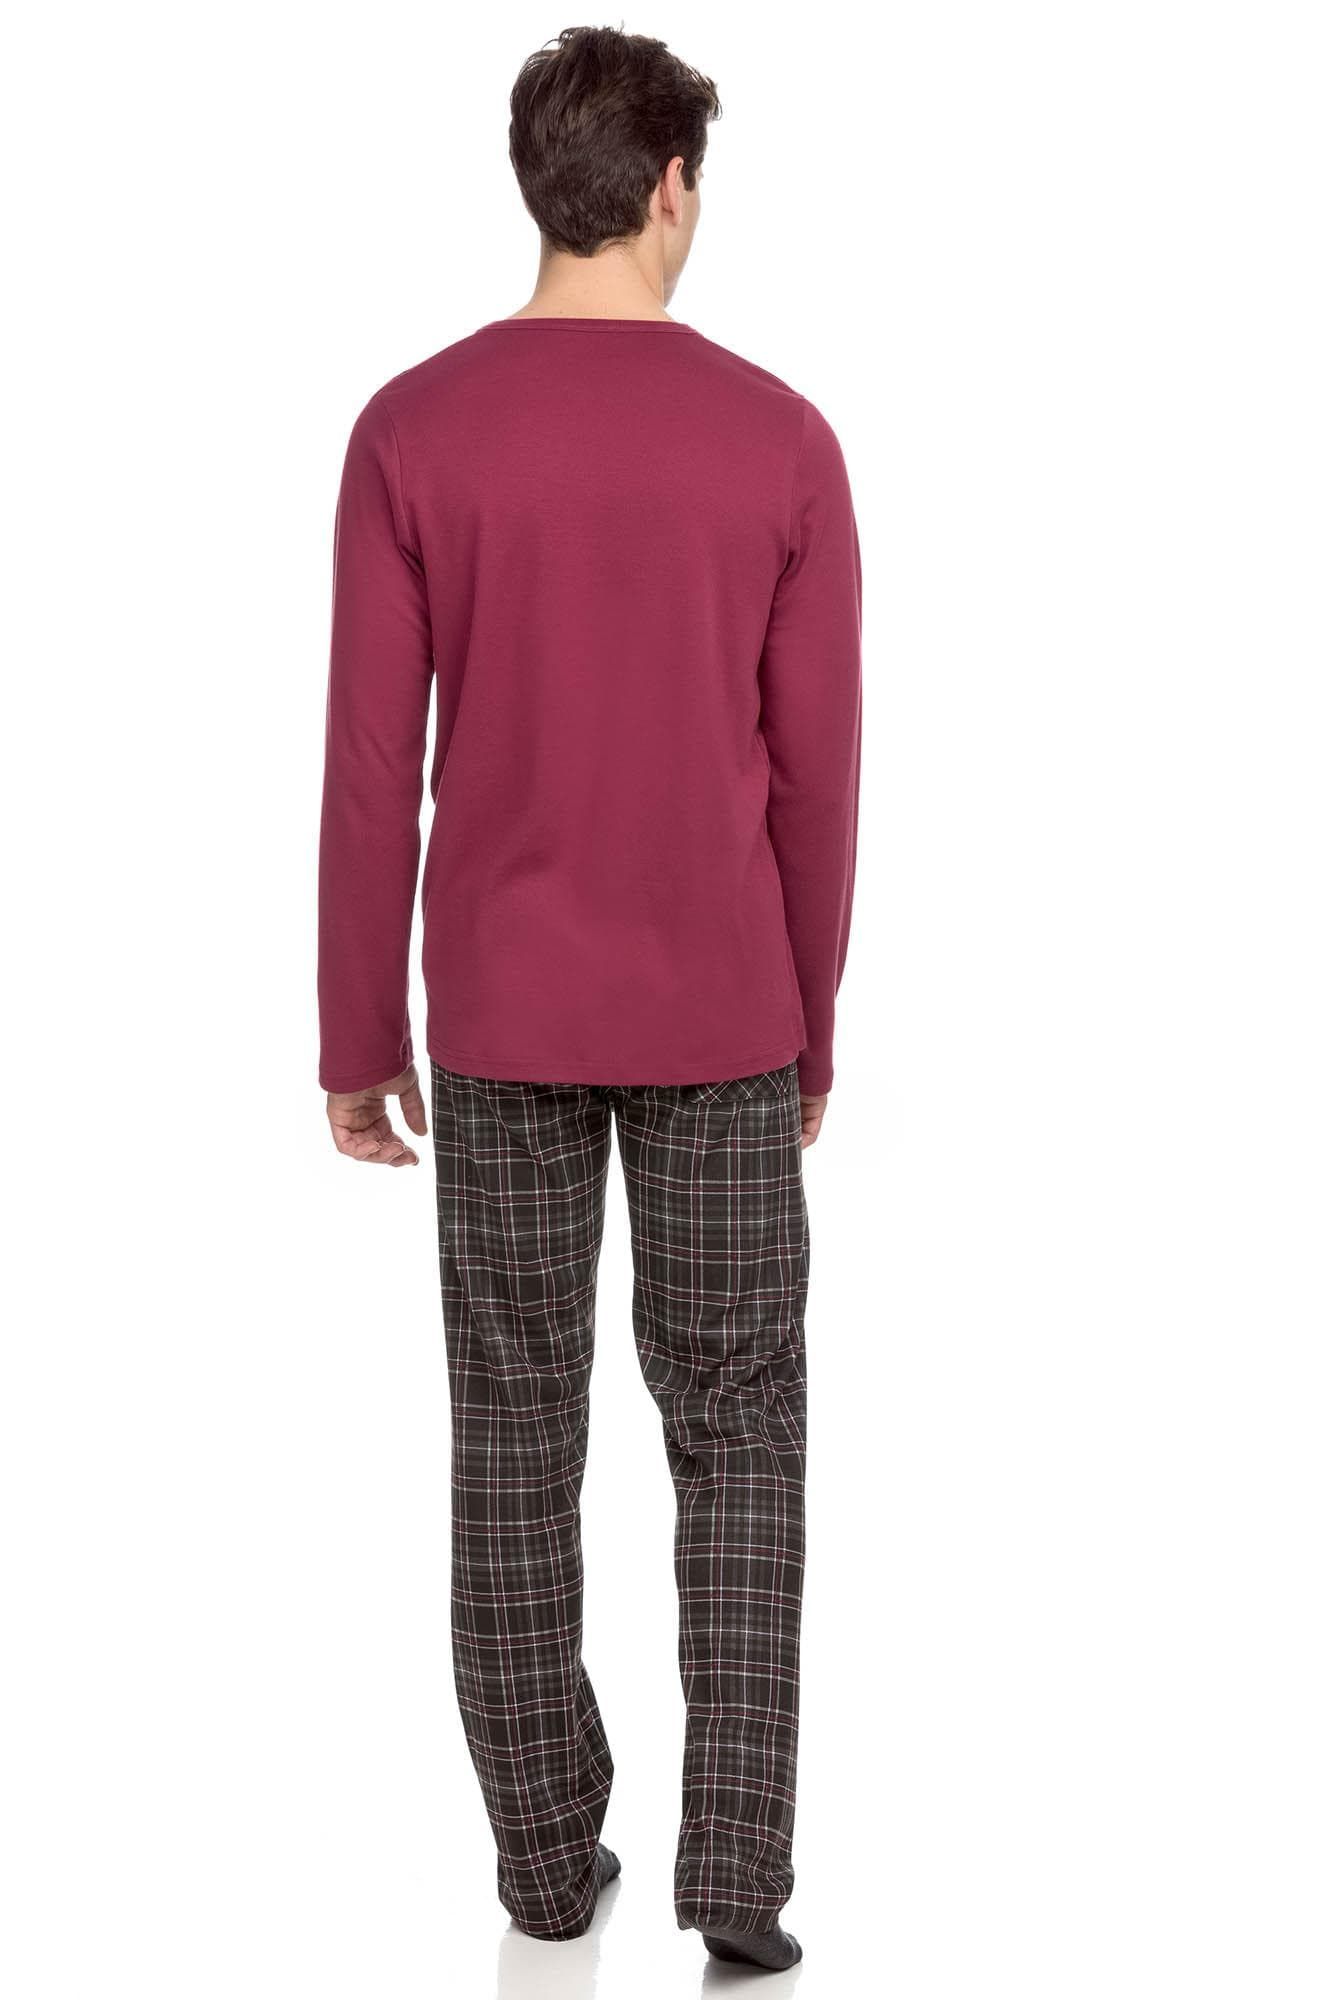 Men’s Cotton Pyjamas with button placket